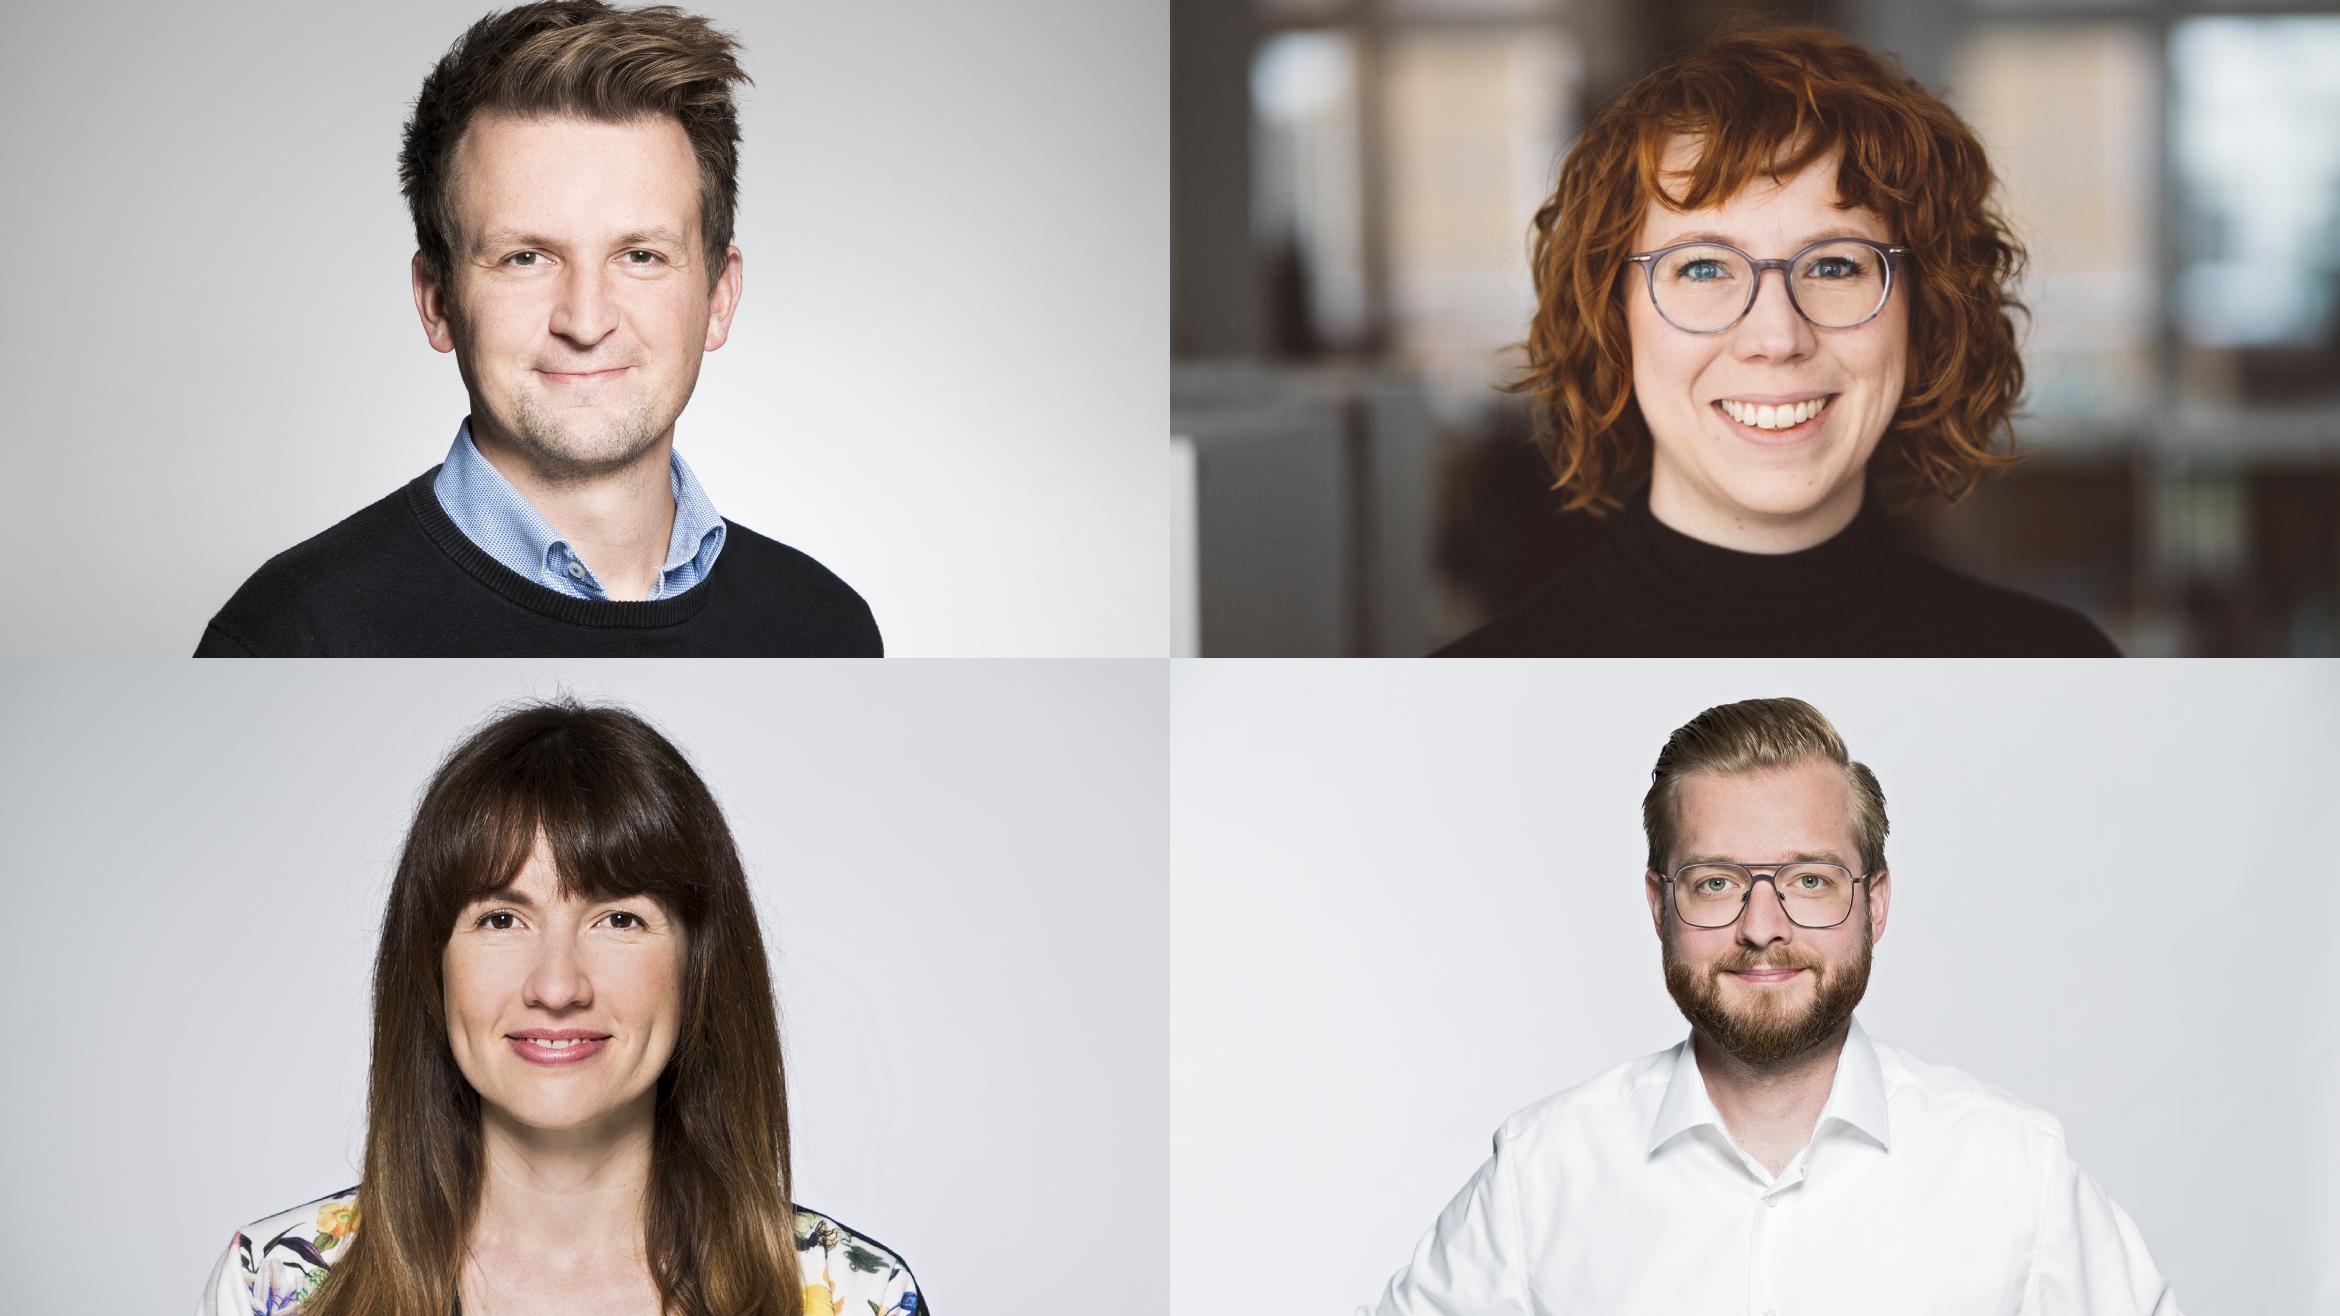 Das Führungsteam fürs Regionale: Robert Hiersemann, Bianca Hoffmann (obere Reihe), Sabrina Först und Florian Wichert –